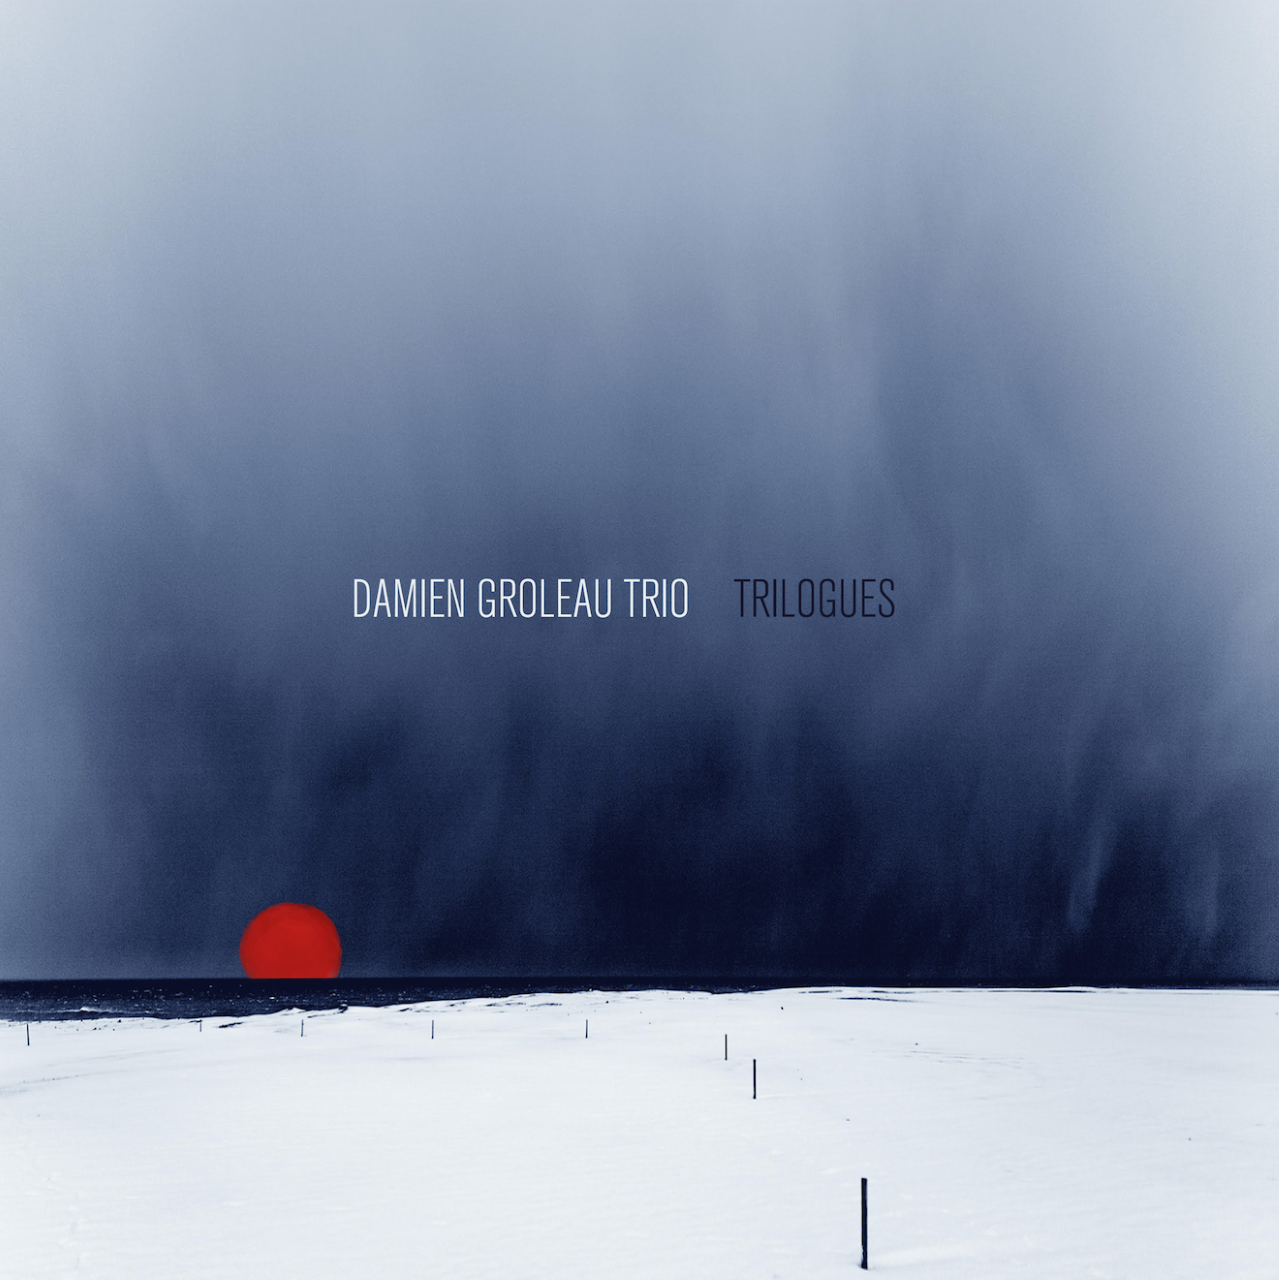     Damien Groleau,             pianiste, flûtiste, compositeur
     - Album Trilogues